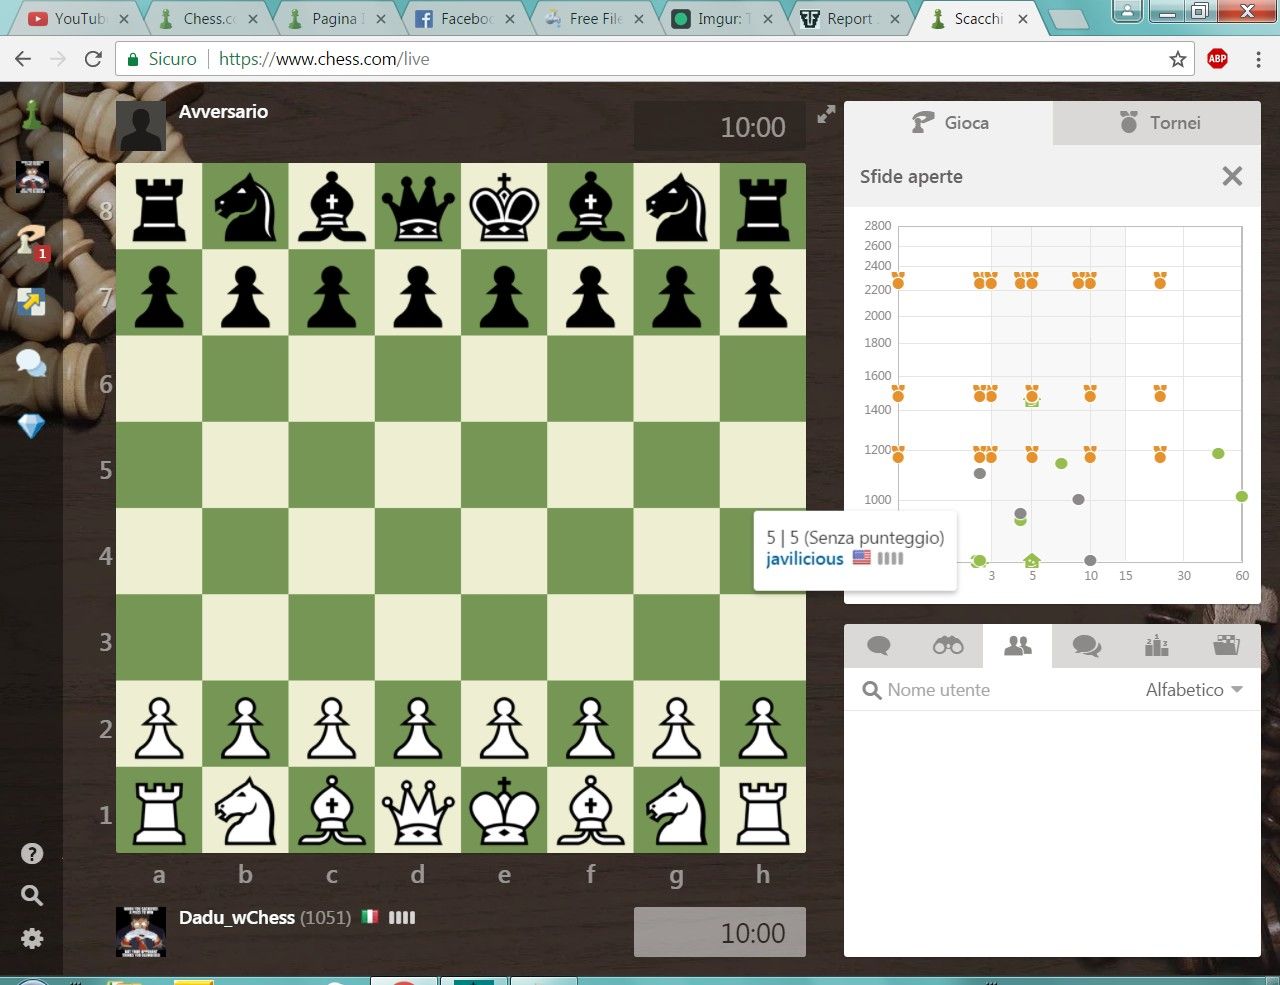 Desafio - 800 a 2500 de rating no chess.com, EPISÓDIO 30